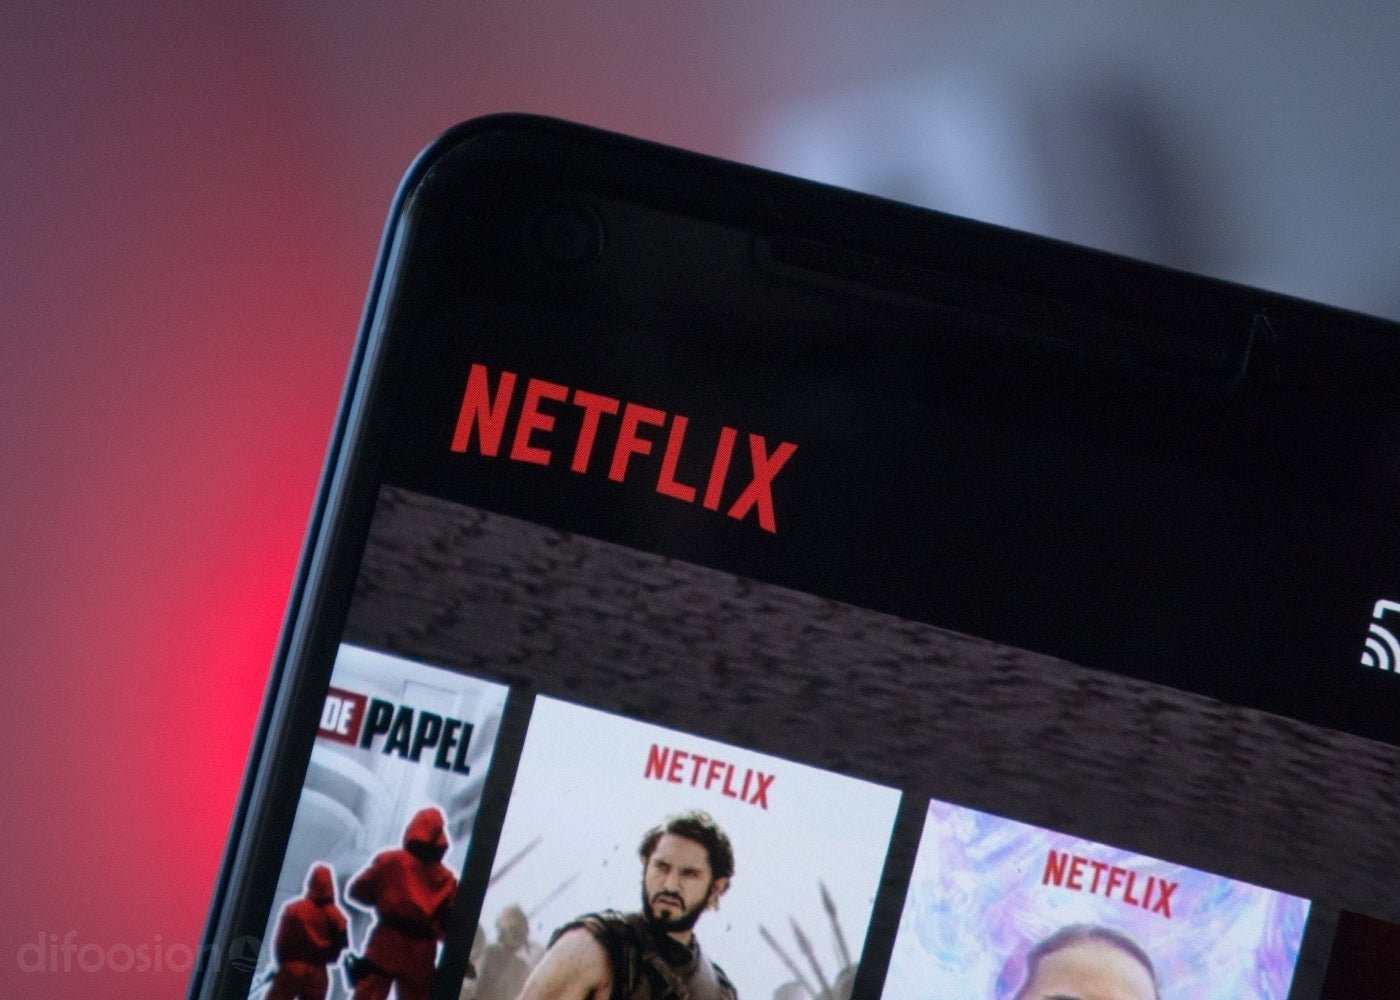 ¡Al fin! Netflix permitirá personalizar los avatares de los usuarios